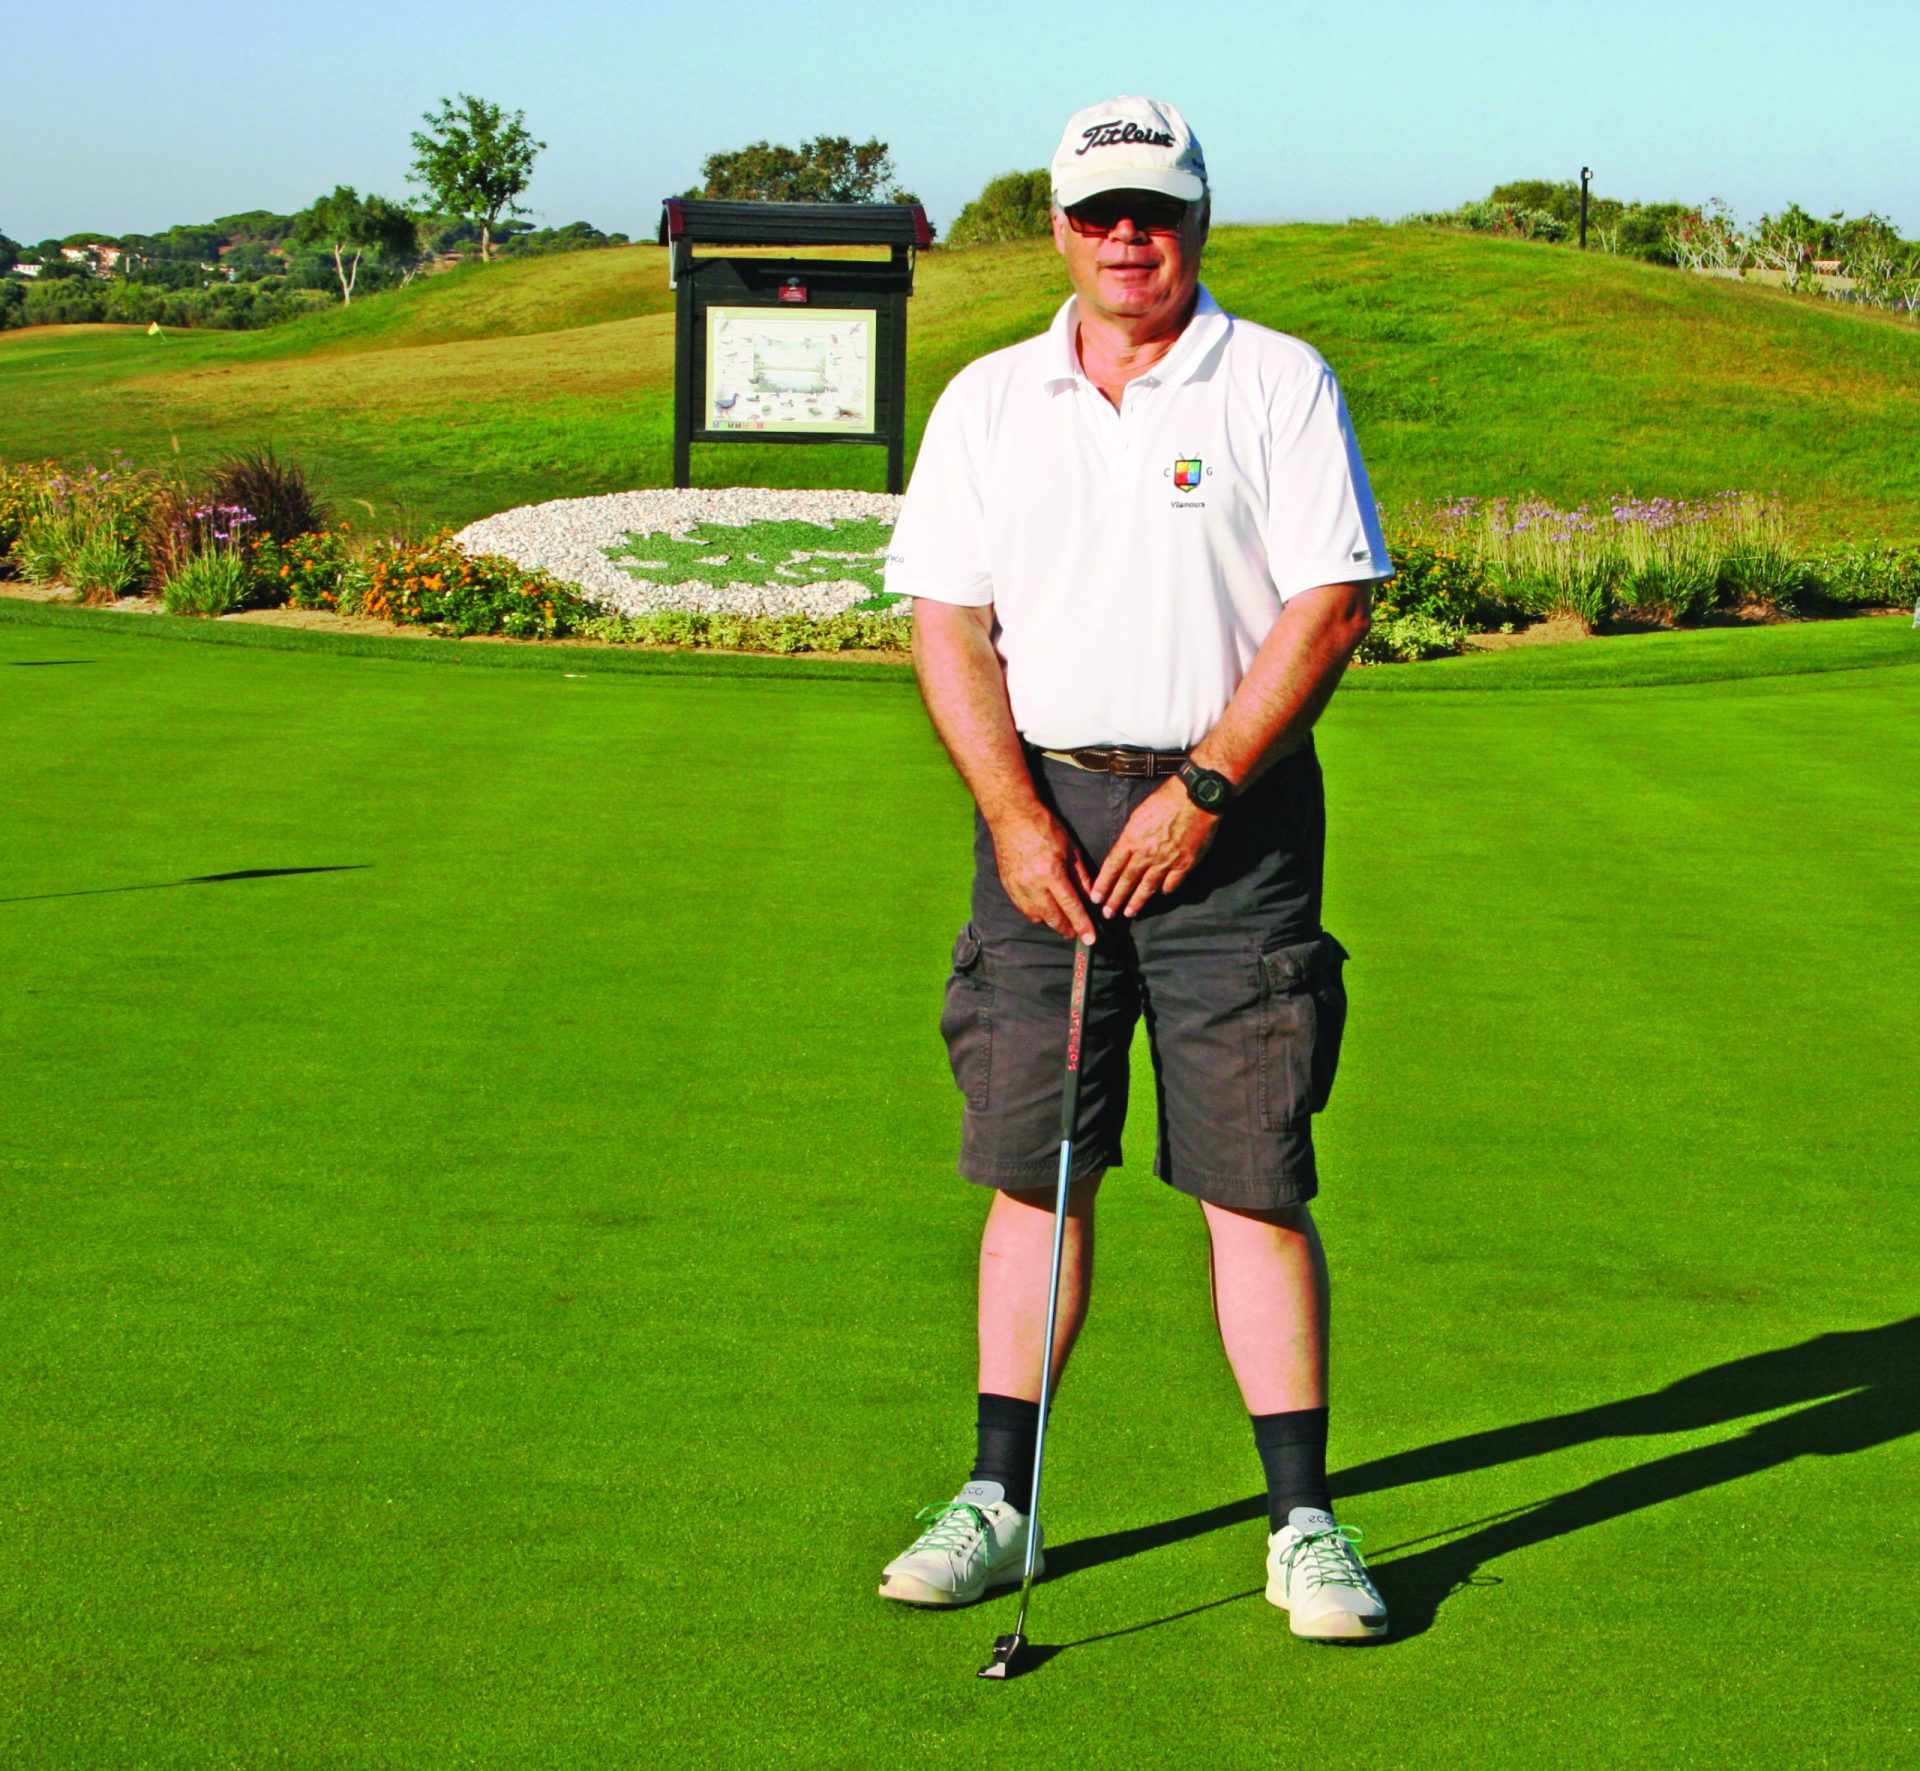 Christopher Stilwell – Uma vida ligada ao golfe